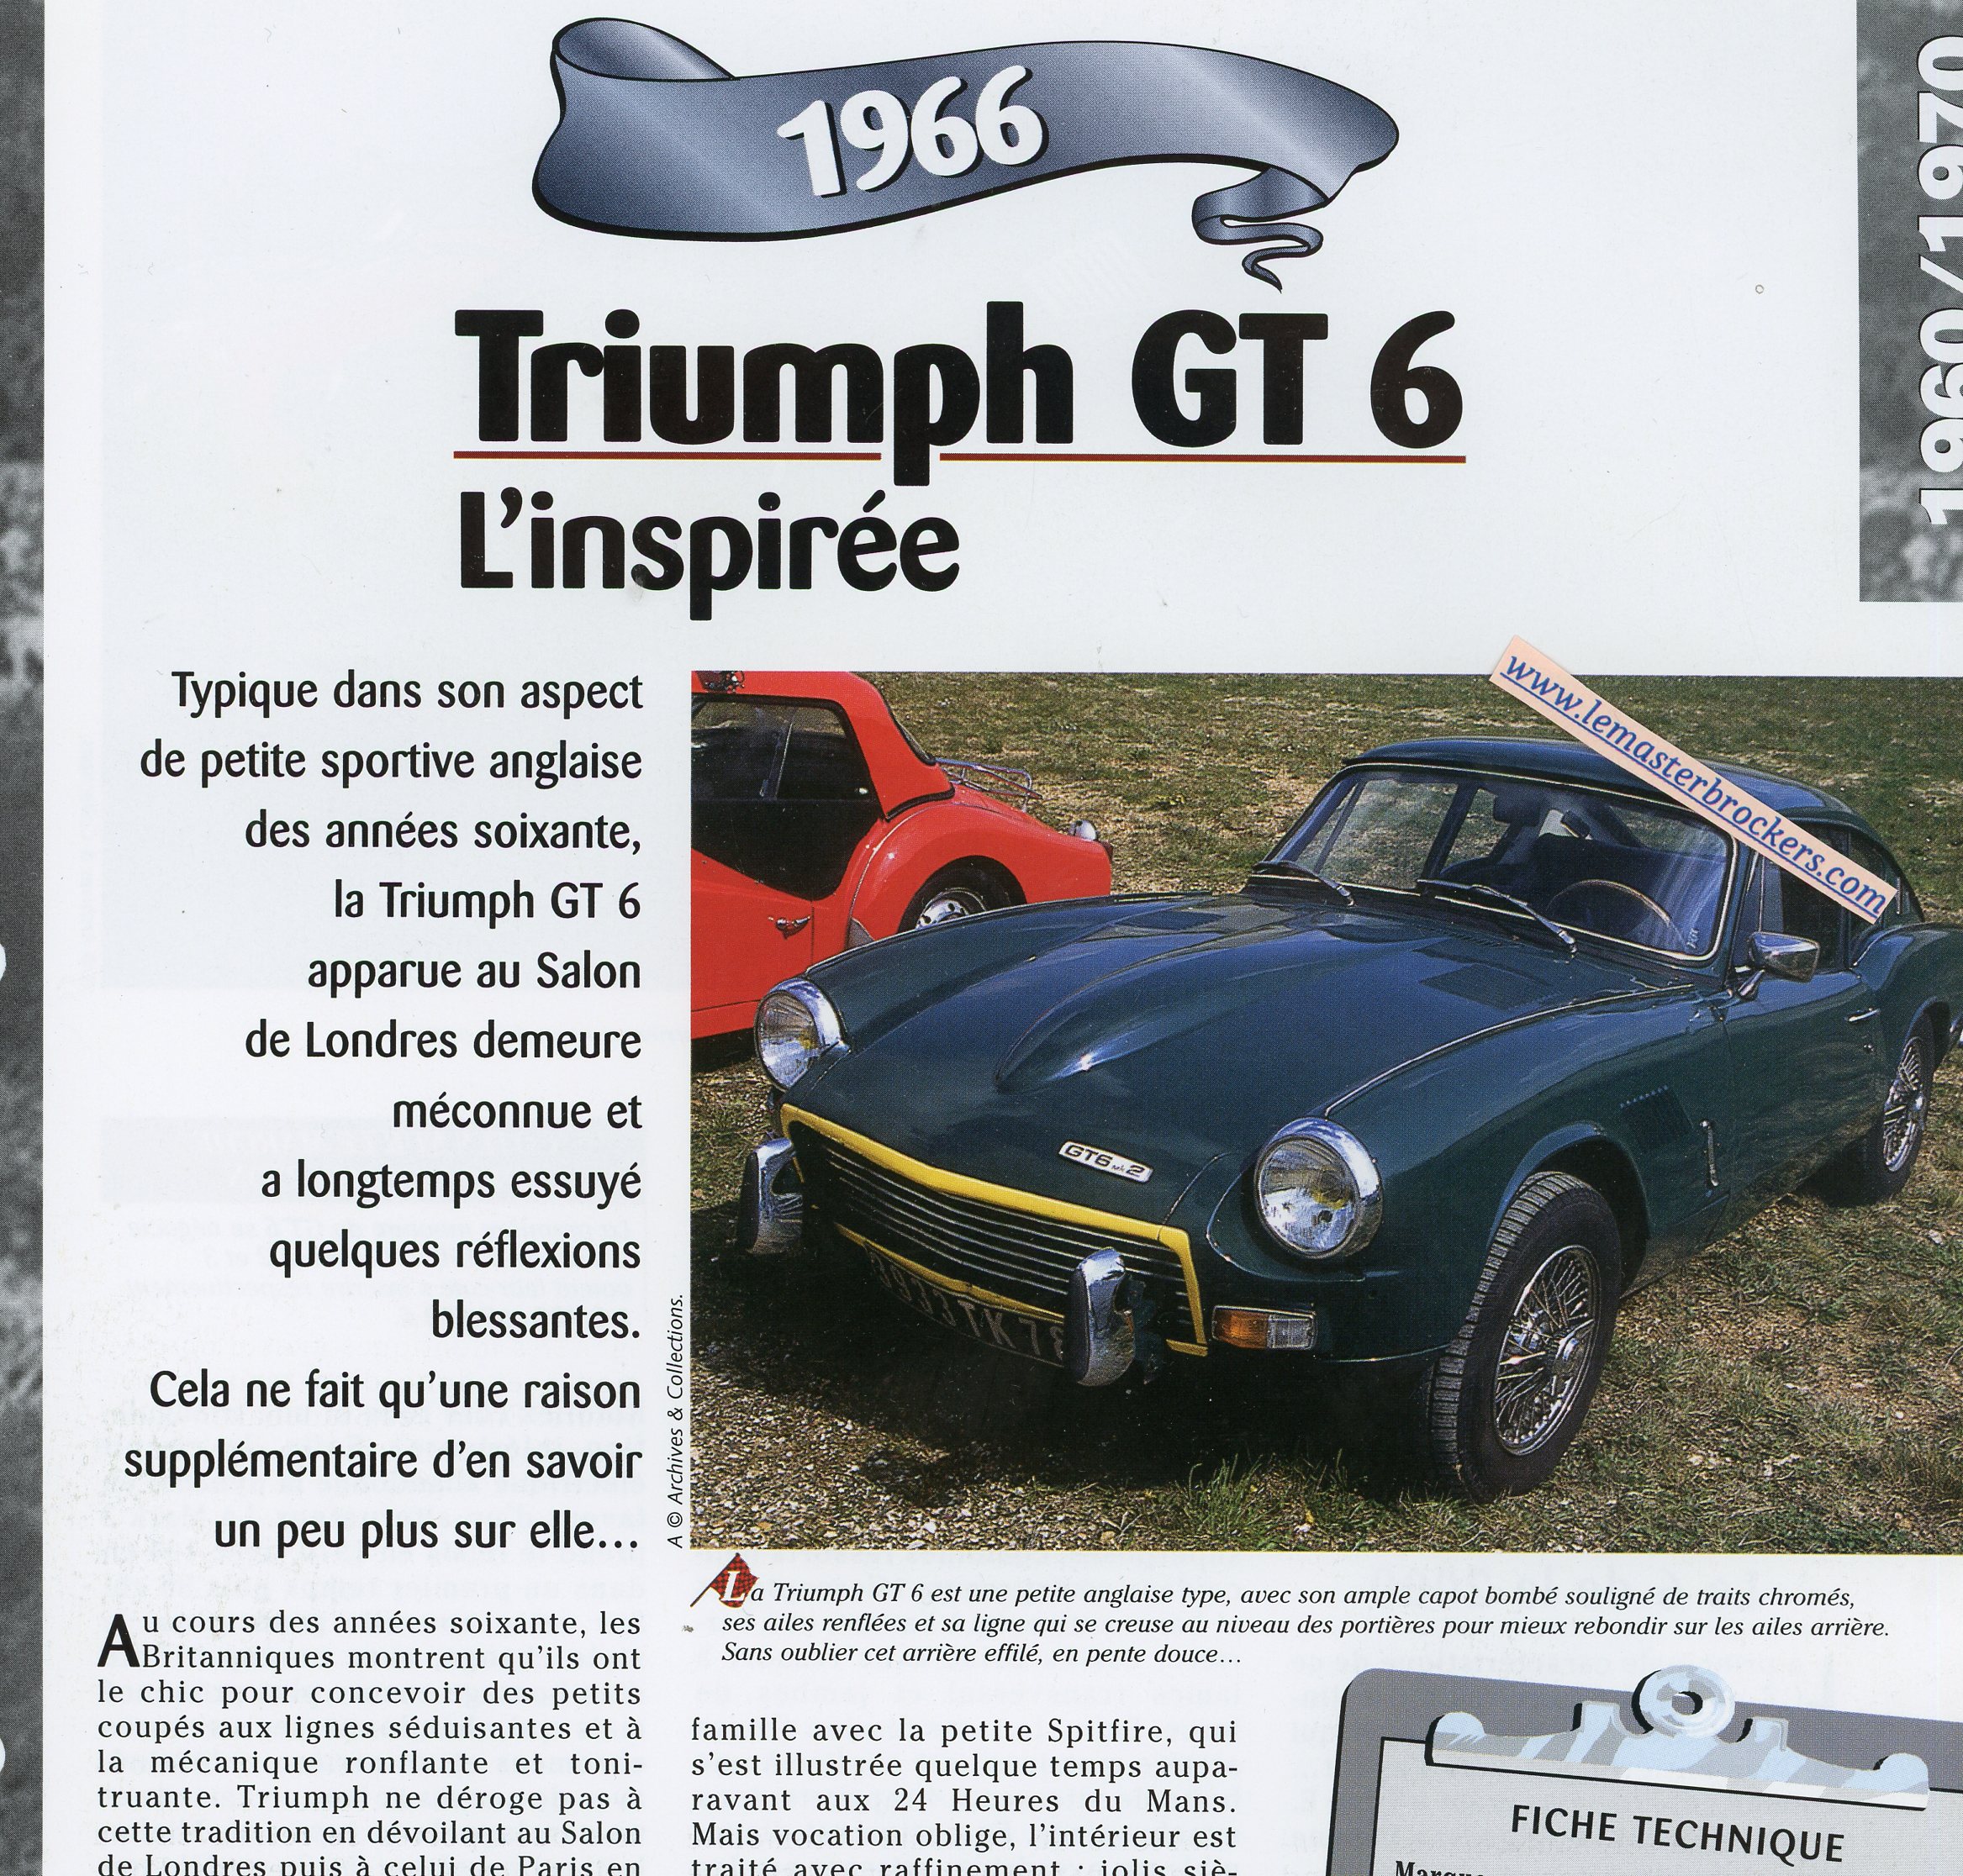 TRIUMPH-GT6-MK1-1961-FICHE-TECHNIQUE-VOITURE-LEMASTERBROCKERS